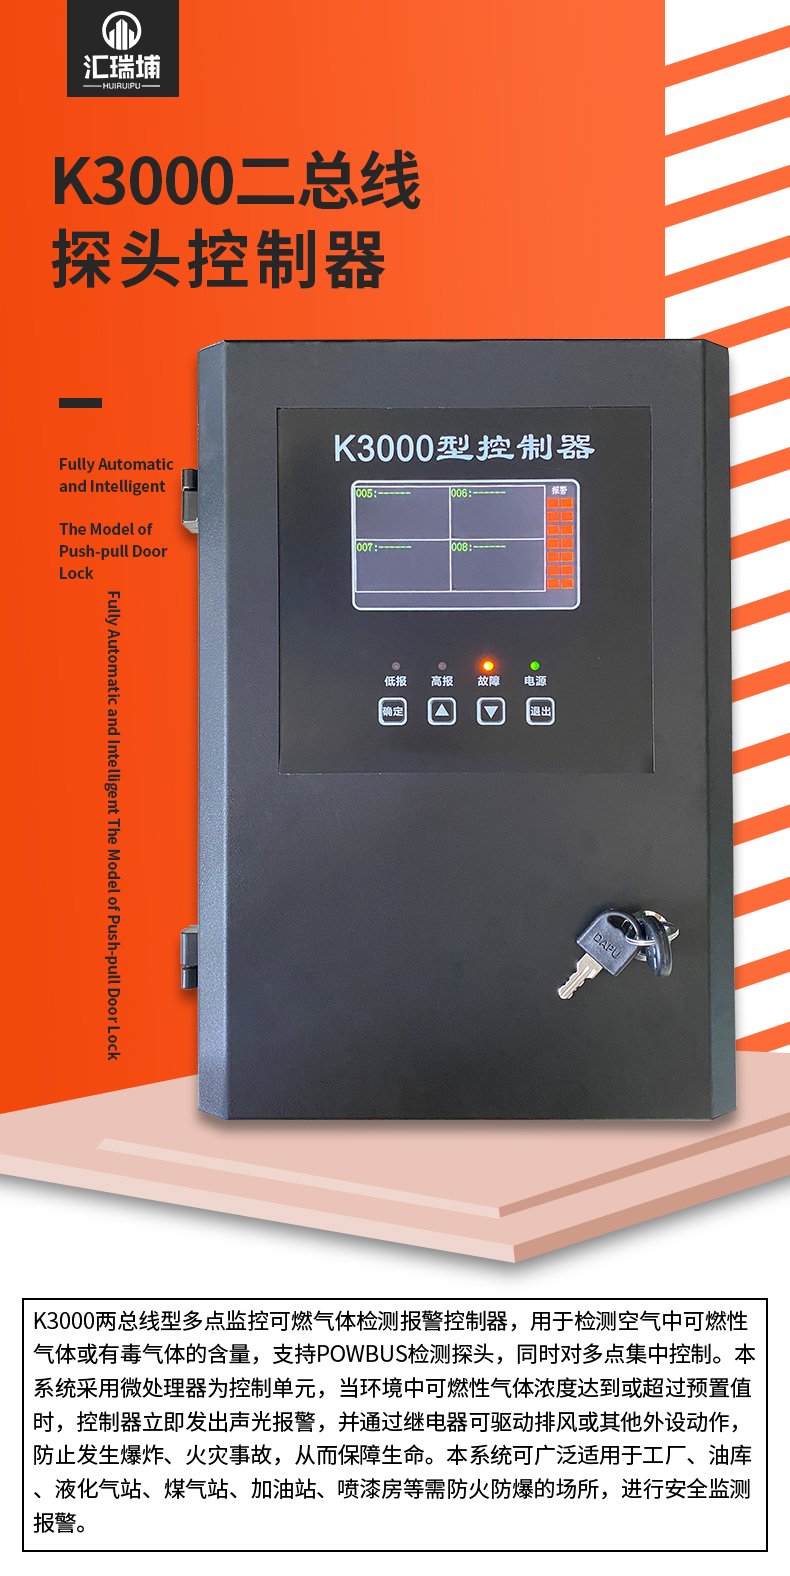 K3000二总线控制器_01.jpg